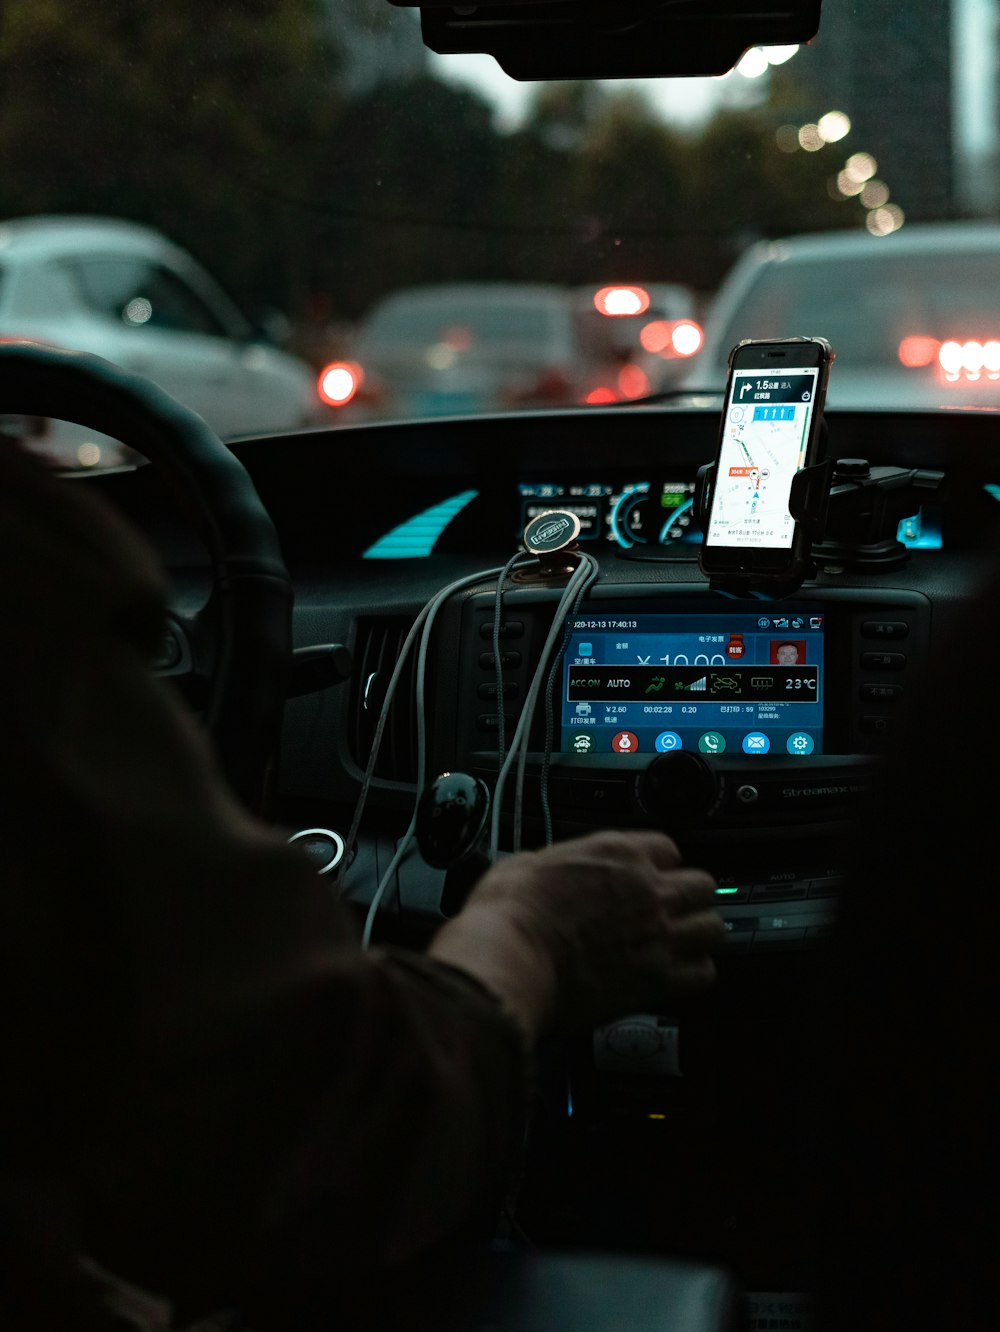 iPhone 6を手にして夜間に道路上の車の写真を撮る人